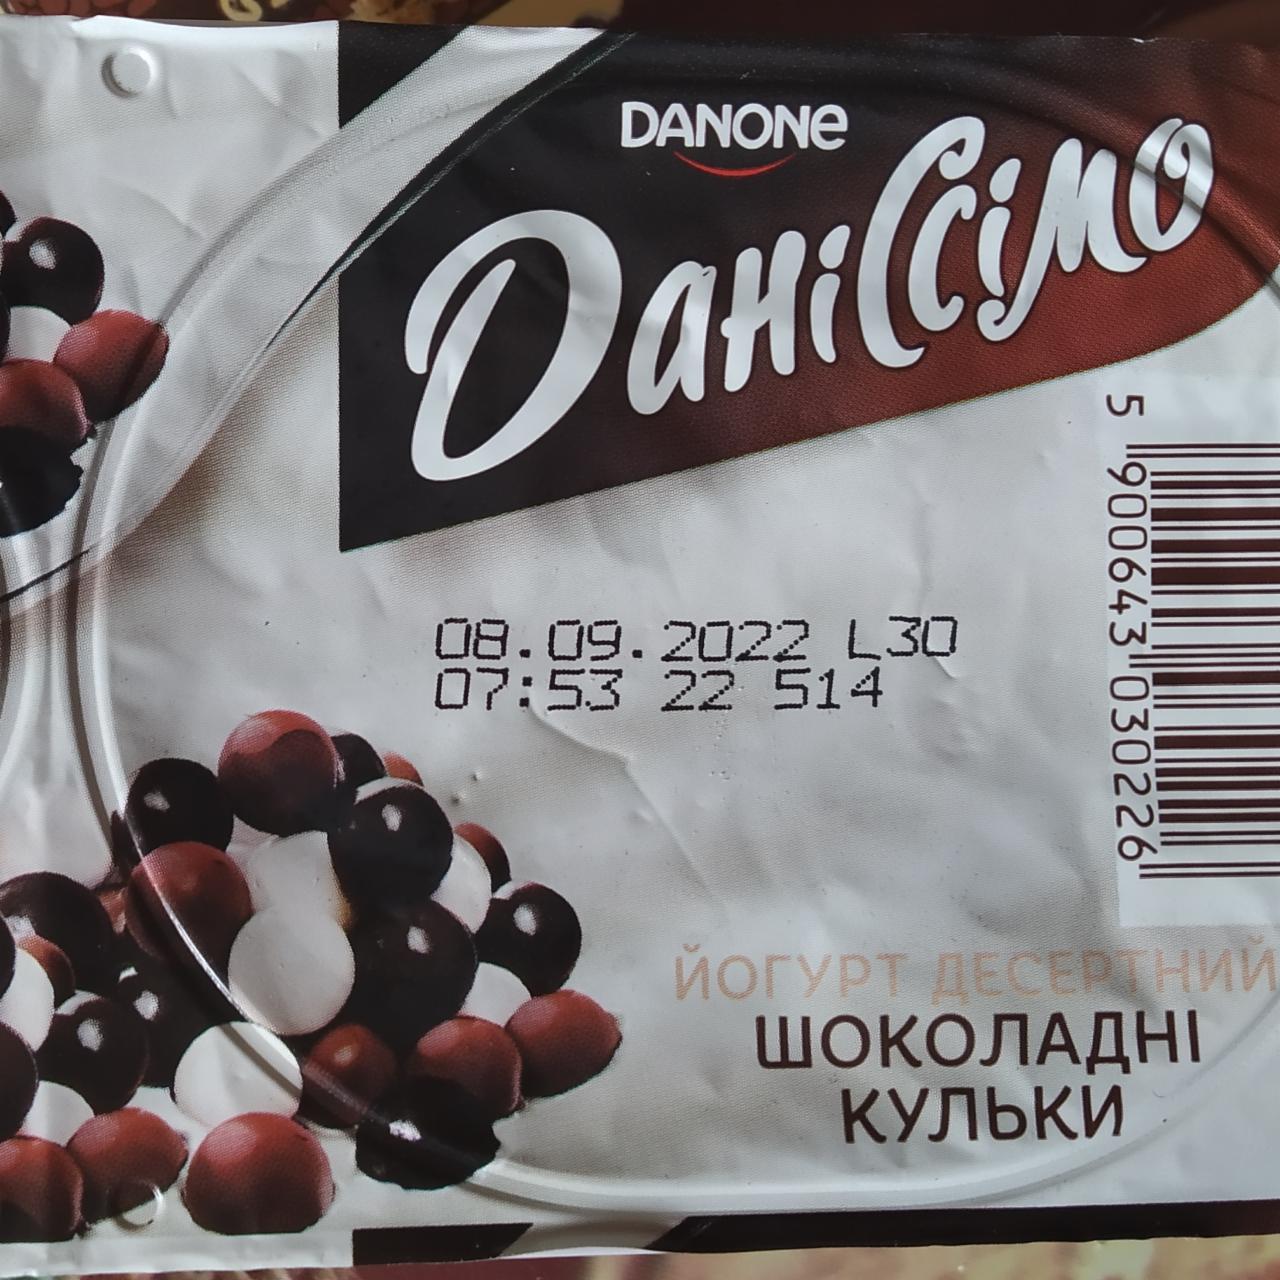 Фото - Йогурт десертний шоколадні кульки ДаніСсімо Danone